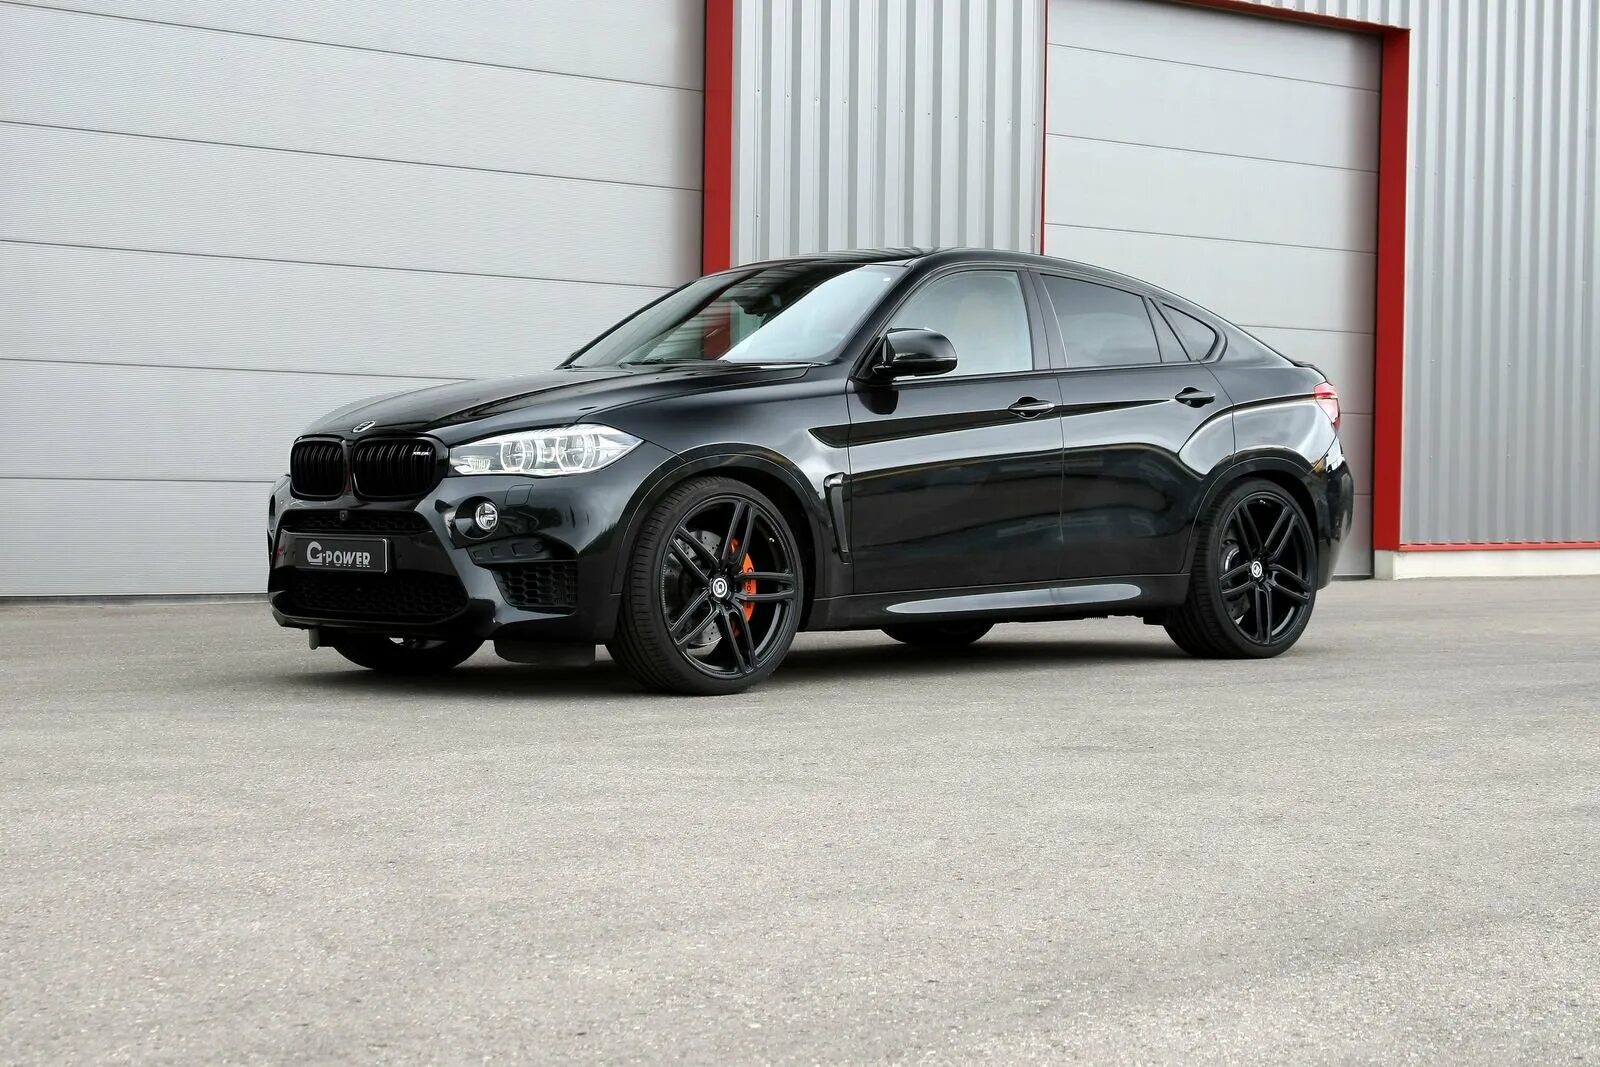 BMW x6m 2018 черный. BMW x6 m черная. BMW x6 m пакет. БМВ х6 f16 черный.